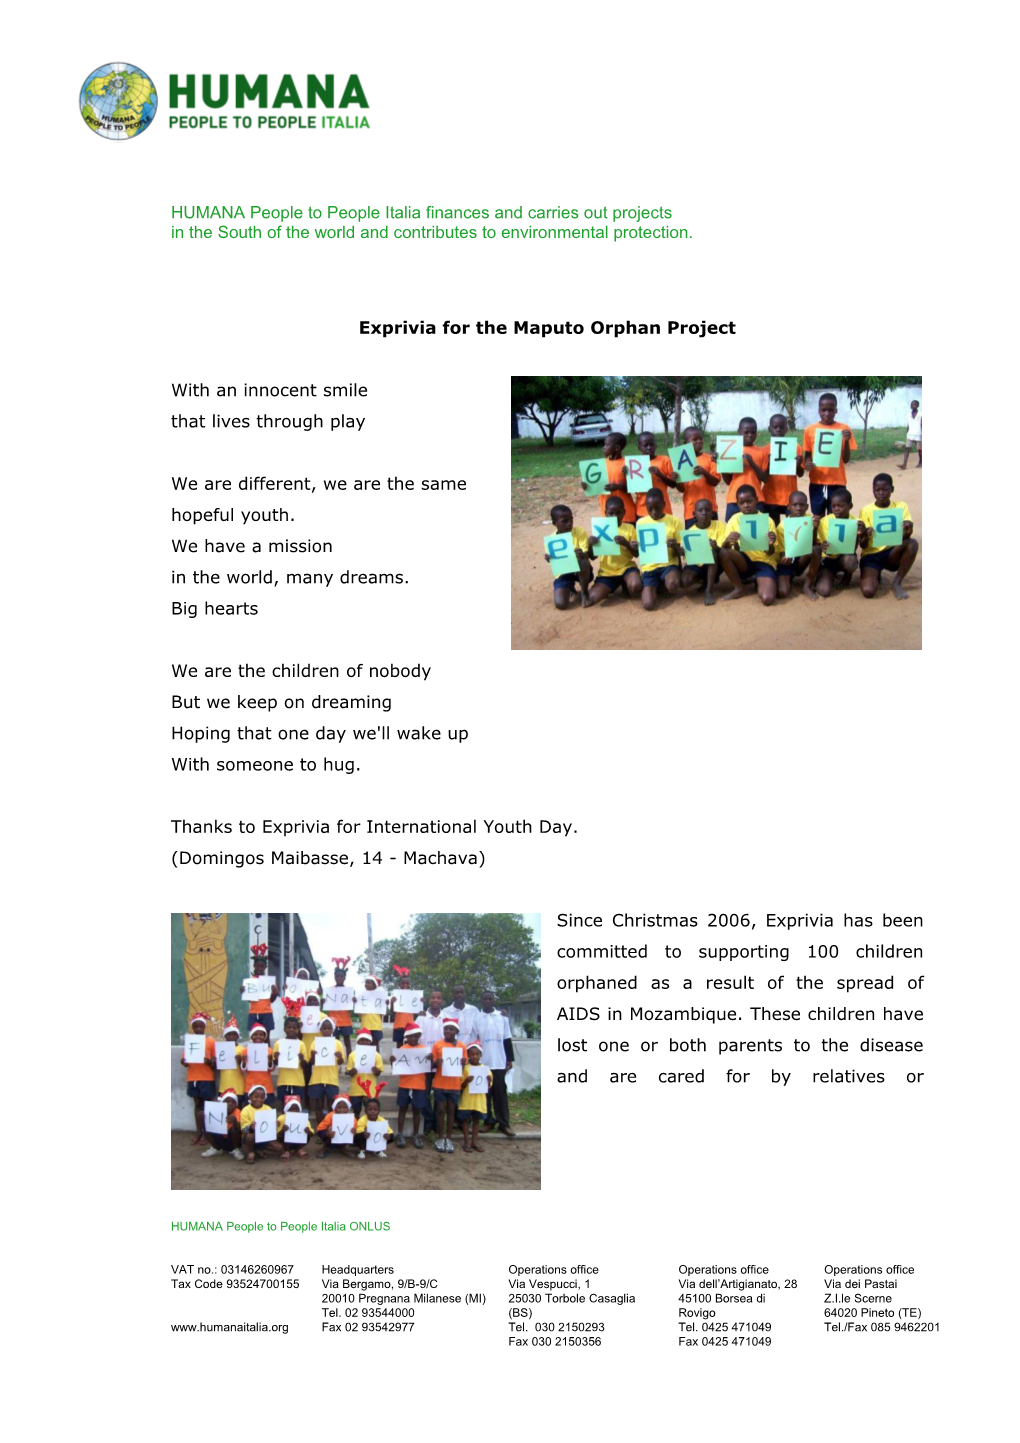 Exprivia Per L Orphan Project Di Maputo